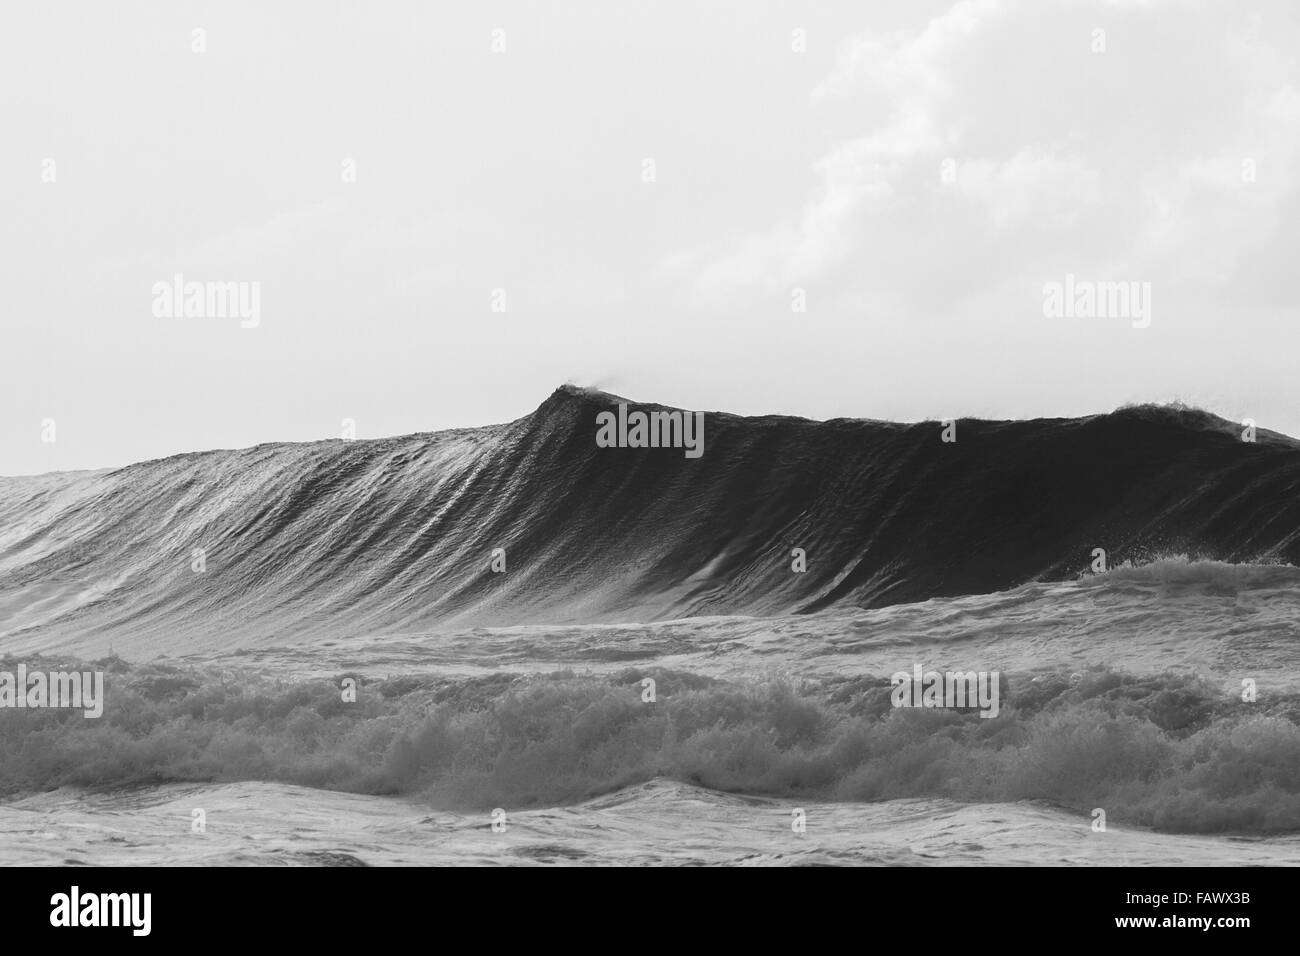 Une énorme vague sur la côte nord d'Oahu à propos de briser Banque D'Images